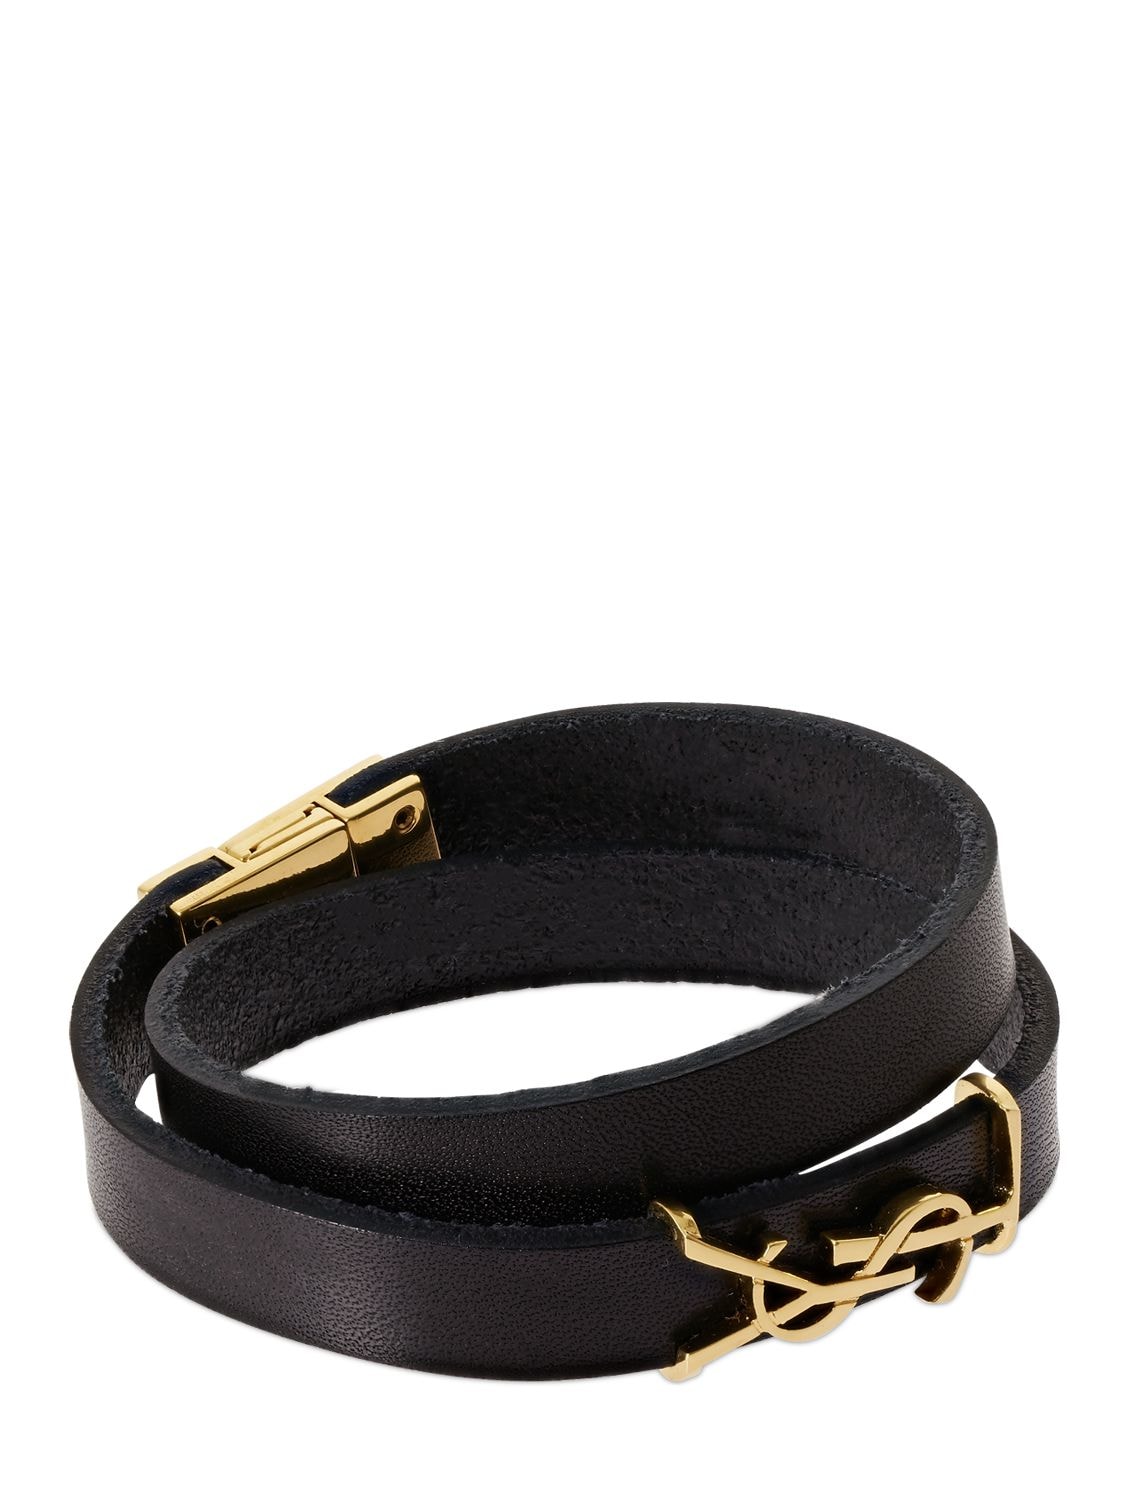 Shop Saint Laurent Ysl Opyum Double Wrap Leather Bracelet In Black